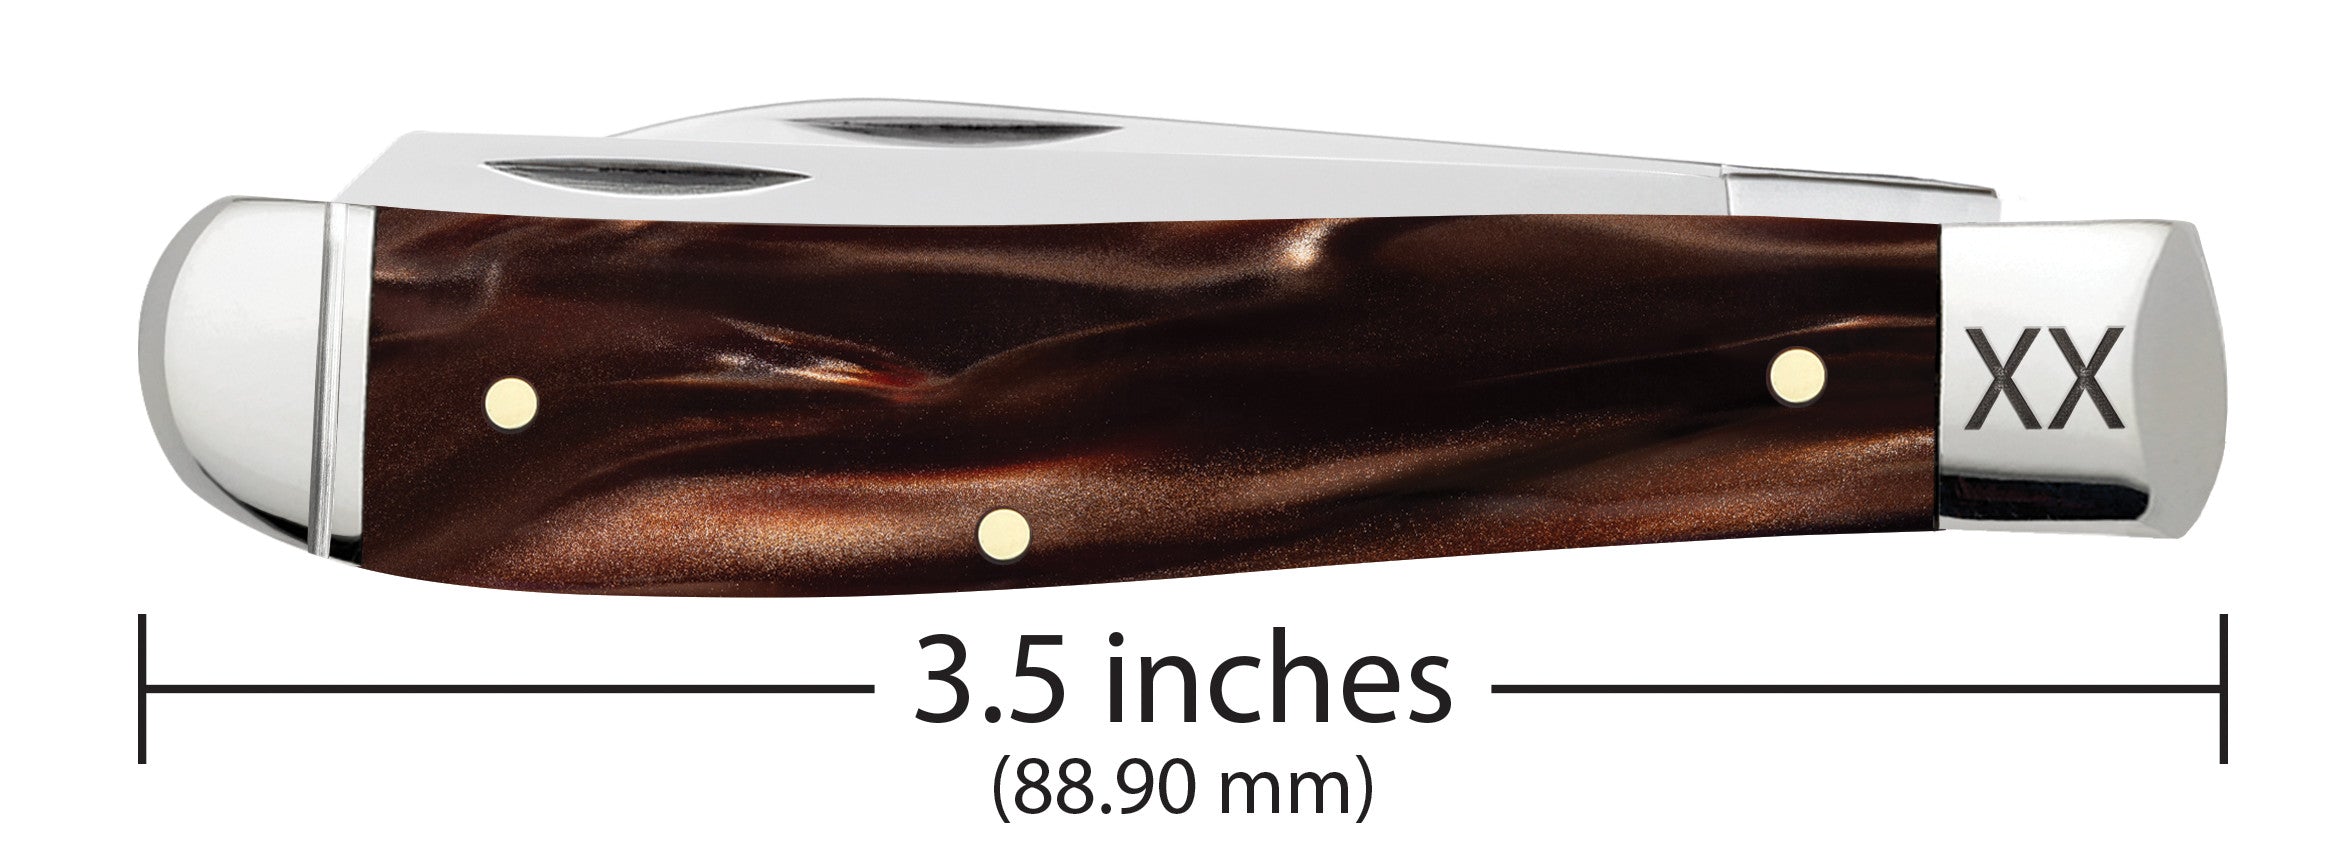 Smooth Caramel Swirl Kirinite® Mini Trapper Knife Dimensions